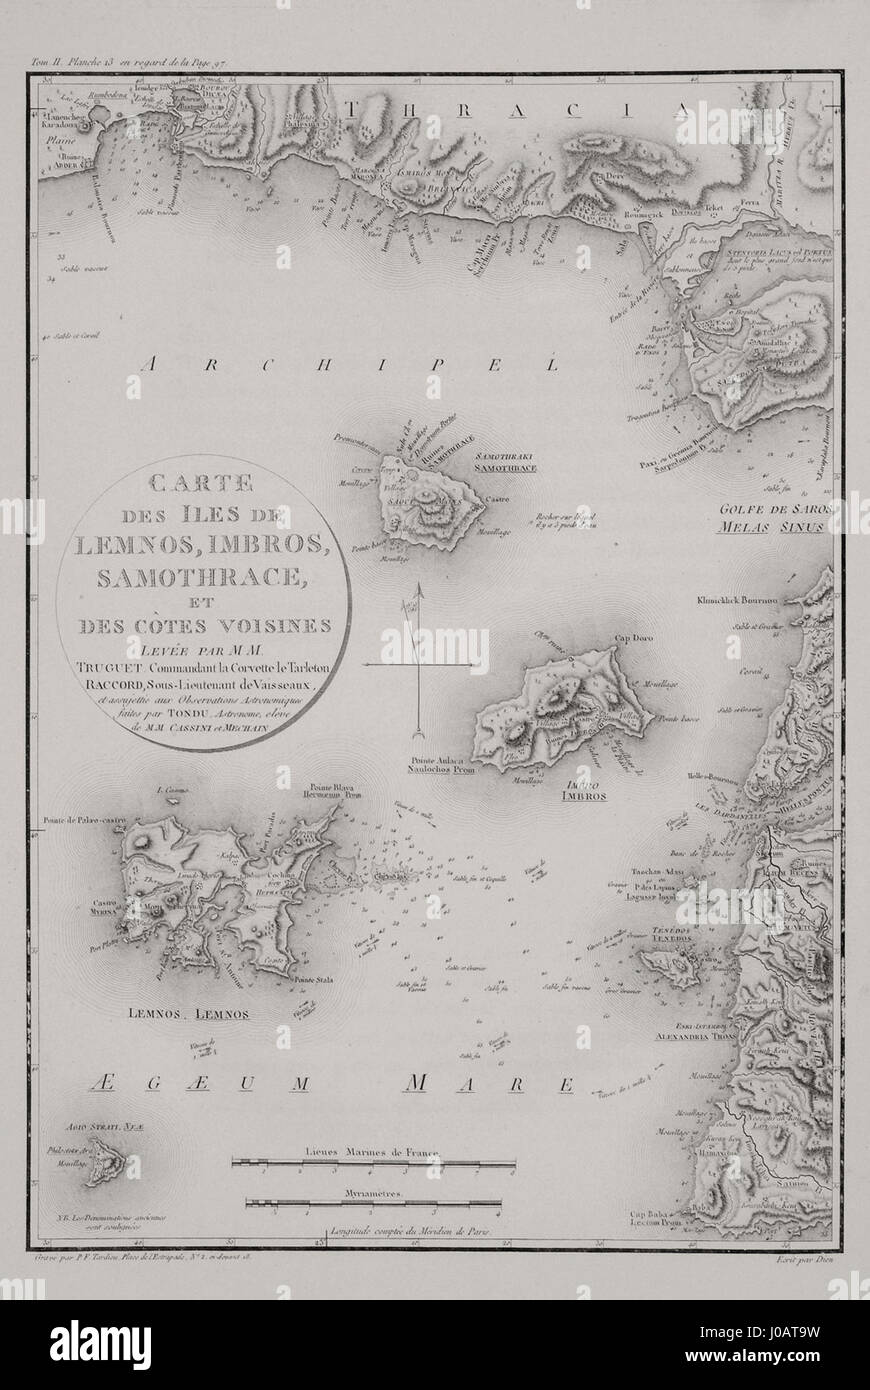 Northeast Aegean - Choiseul-Gouffier, Voyage pittoresque de la Grèce, Paris, 1809 Stock Photo